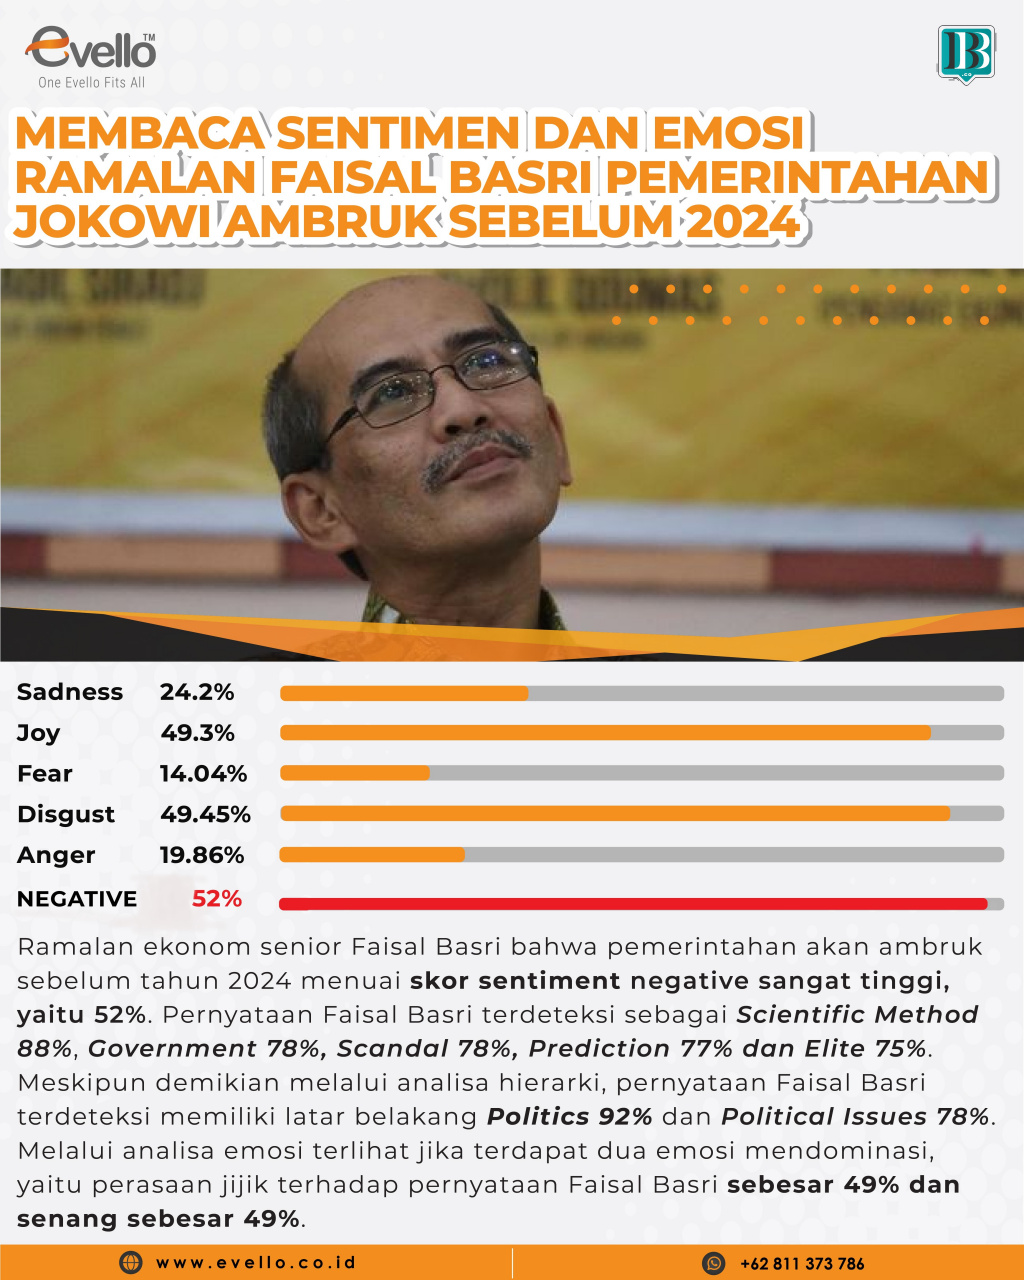 Membaca Sentimen Ramalan Faisal Basri 'Pemerintahan Jokowi Ambruk Sebelum 2024'